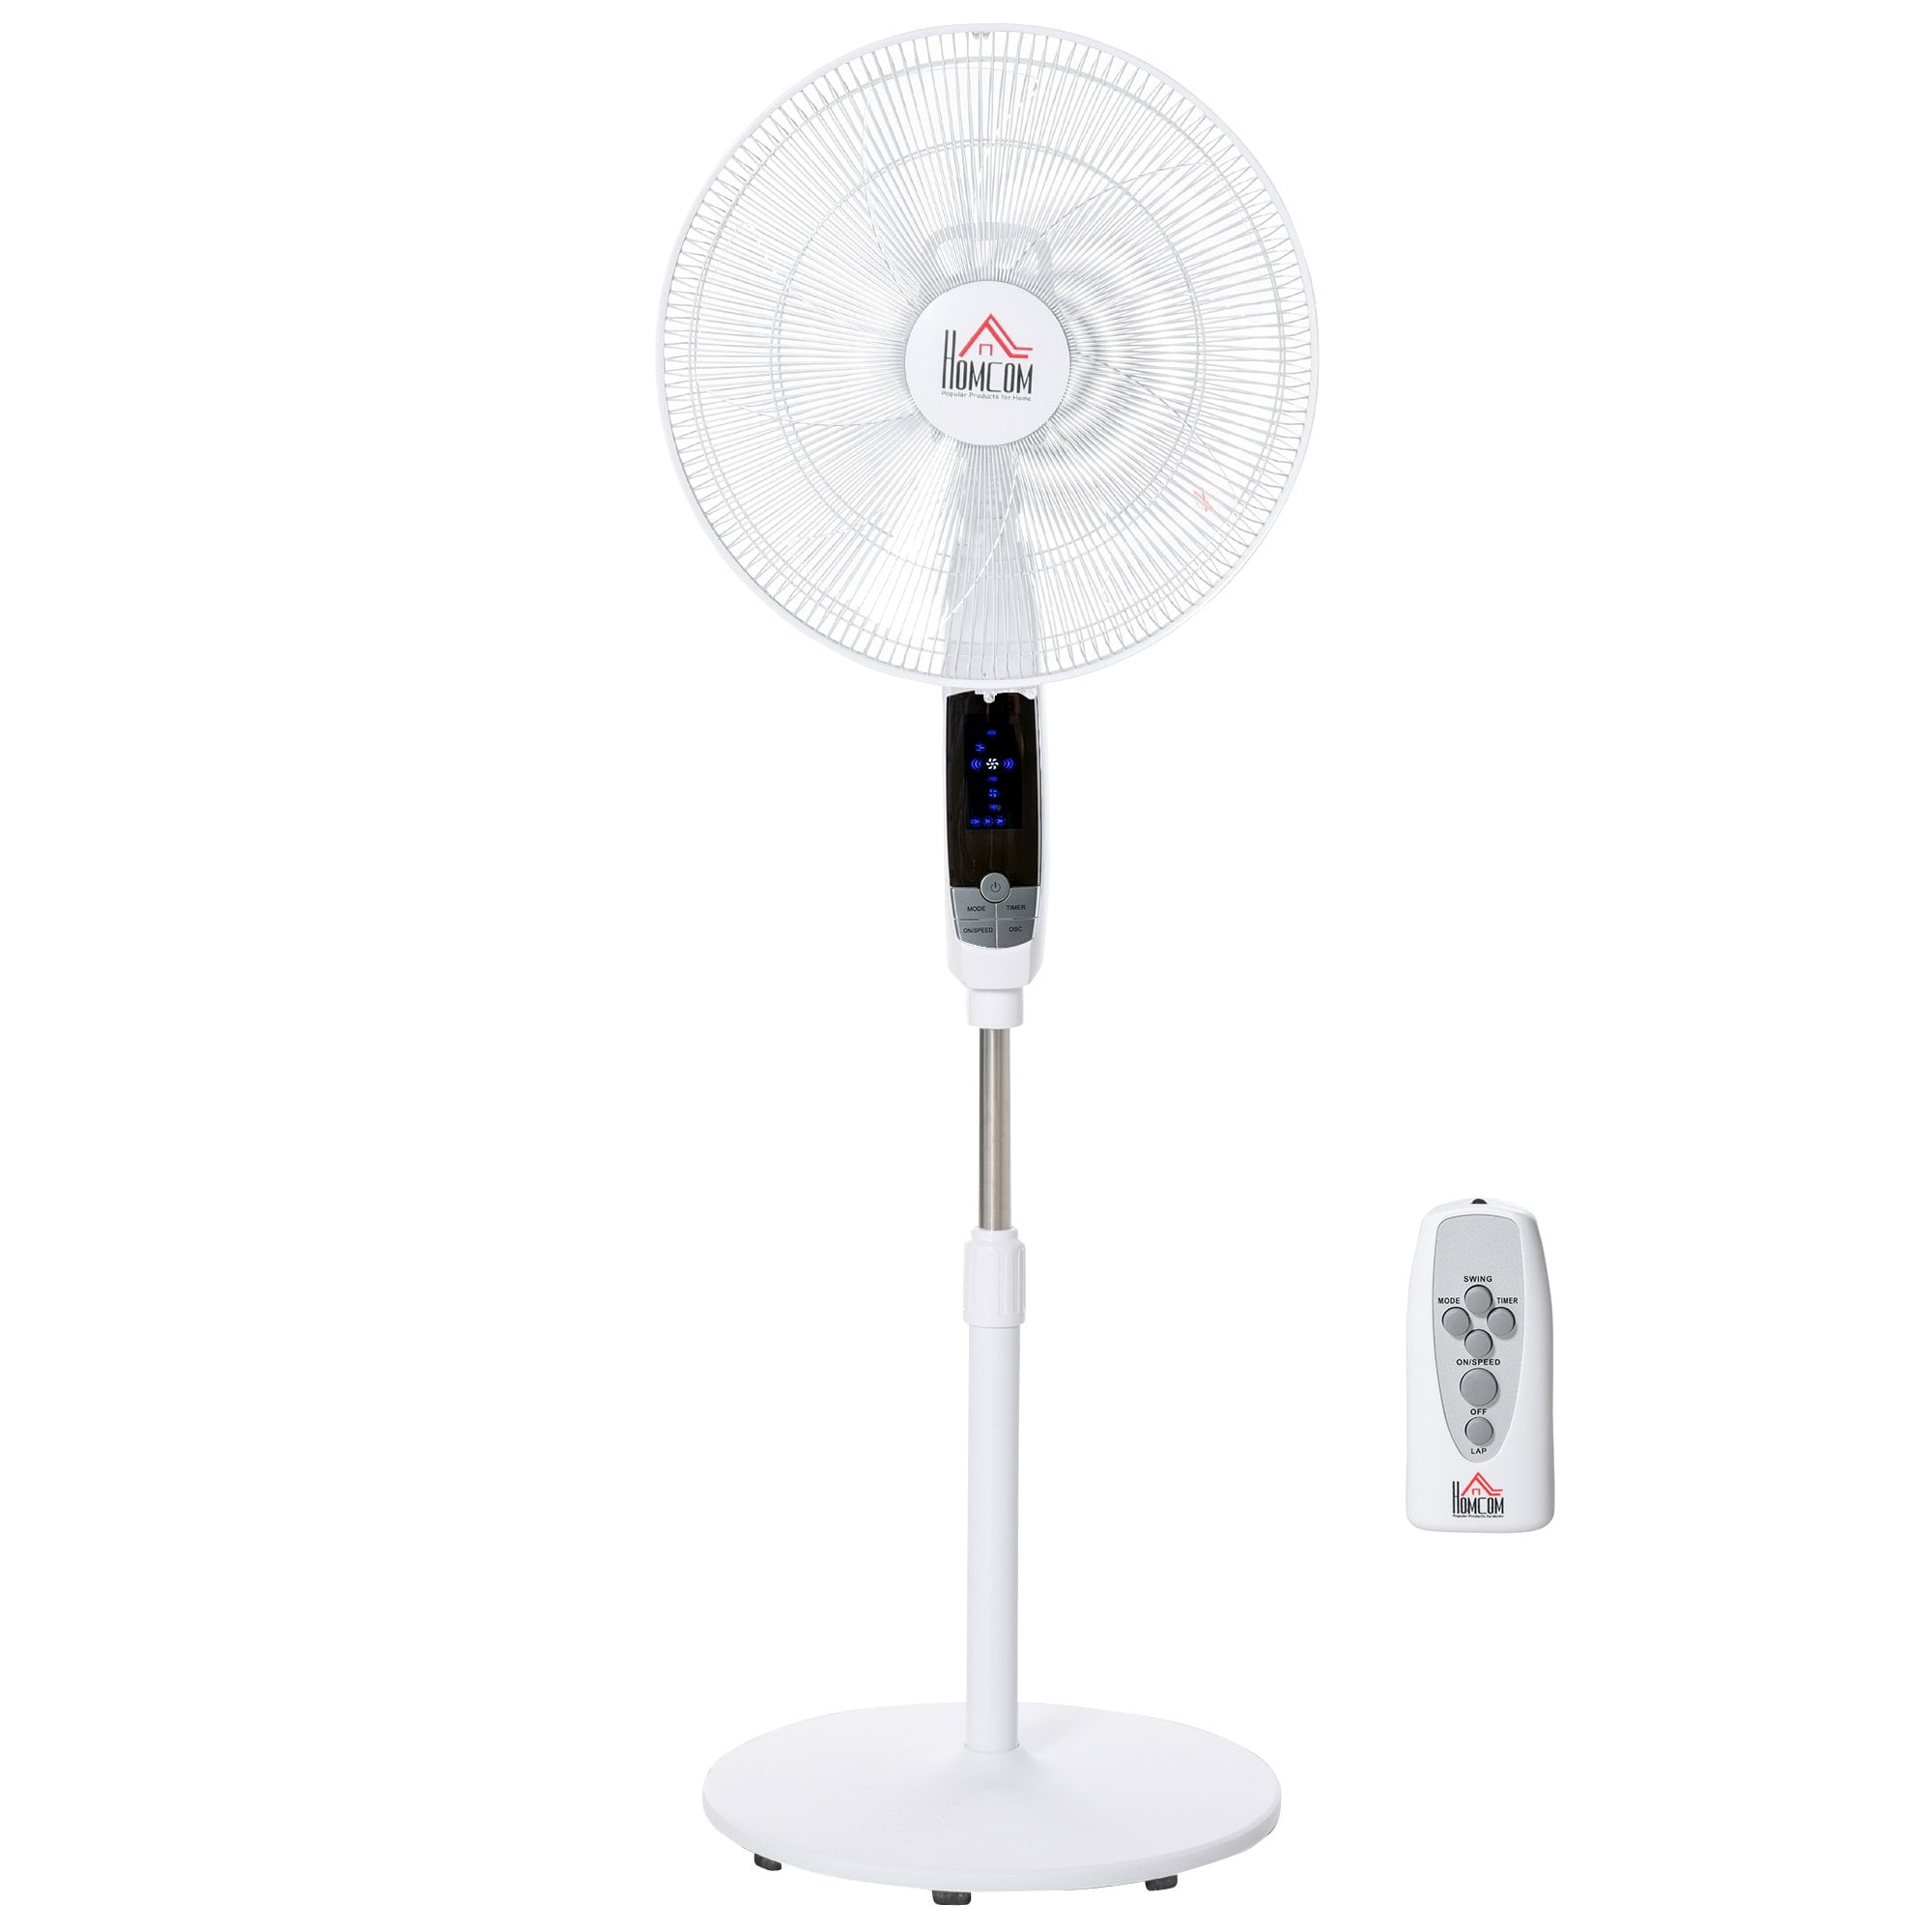 HOMCOM Pedestal Stand Fan - 3 Speed 3 Mode - 85-| Oscillation - LED Panel - 3M Remote Controller - Height Adjustable for Living Room - Bedroom - Garag